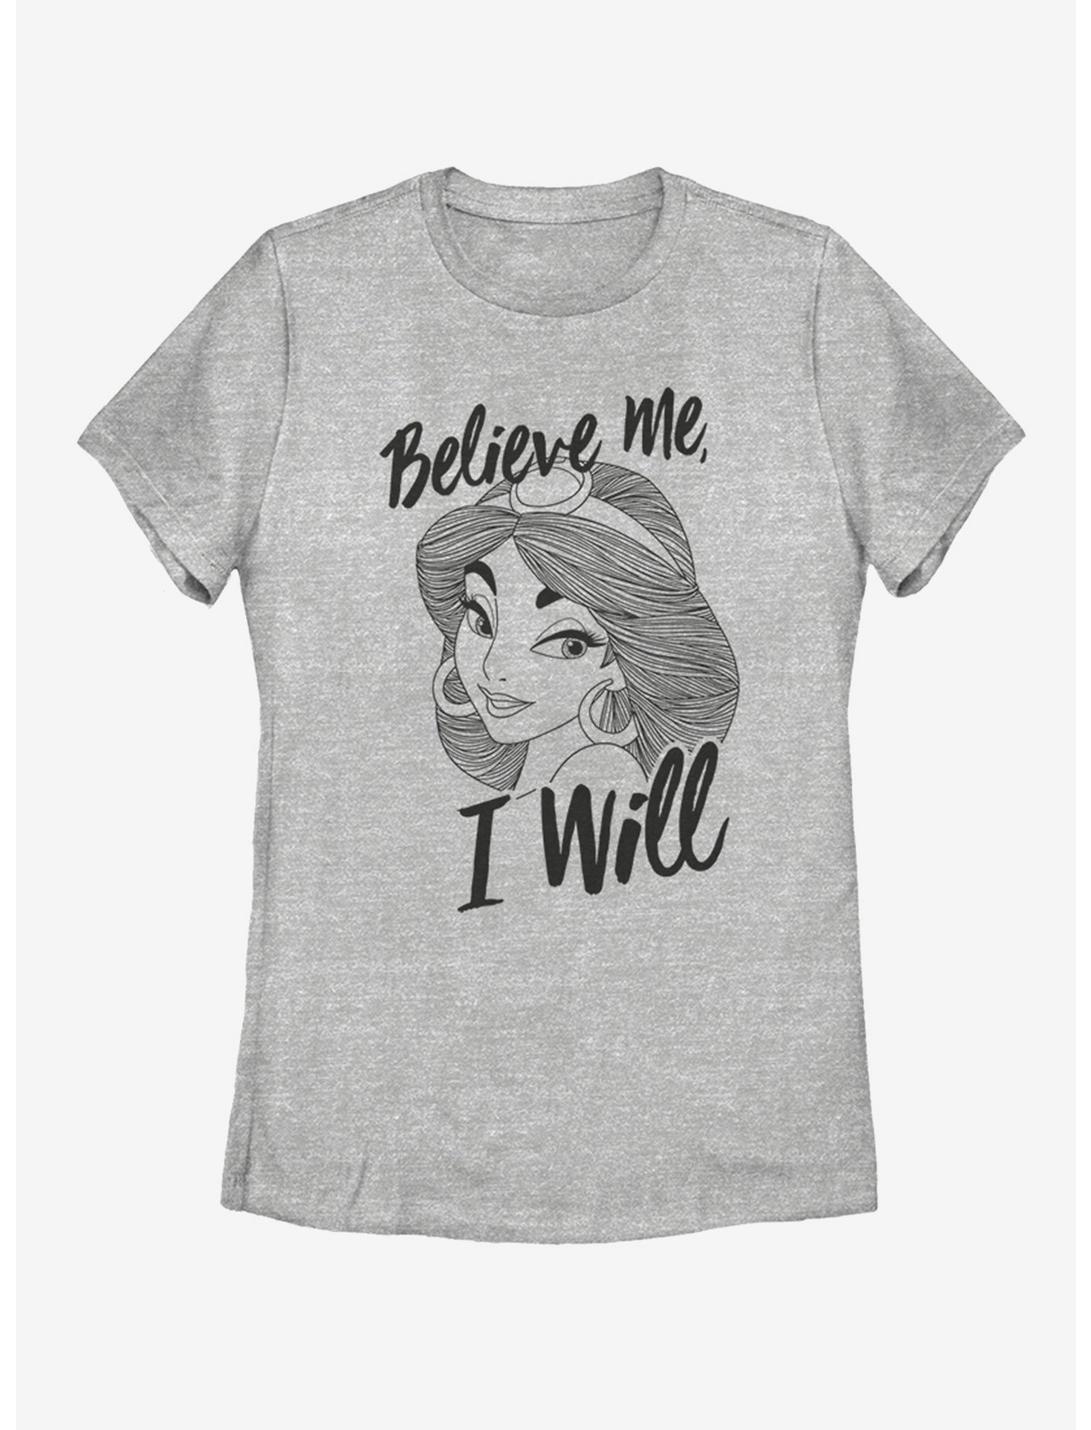 Disney Make Magic Womens T-Shirt, ATH HTR, hi-res